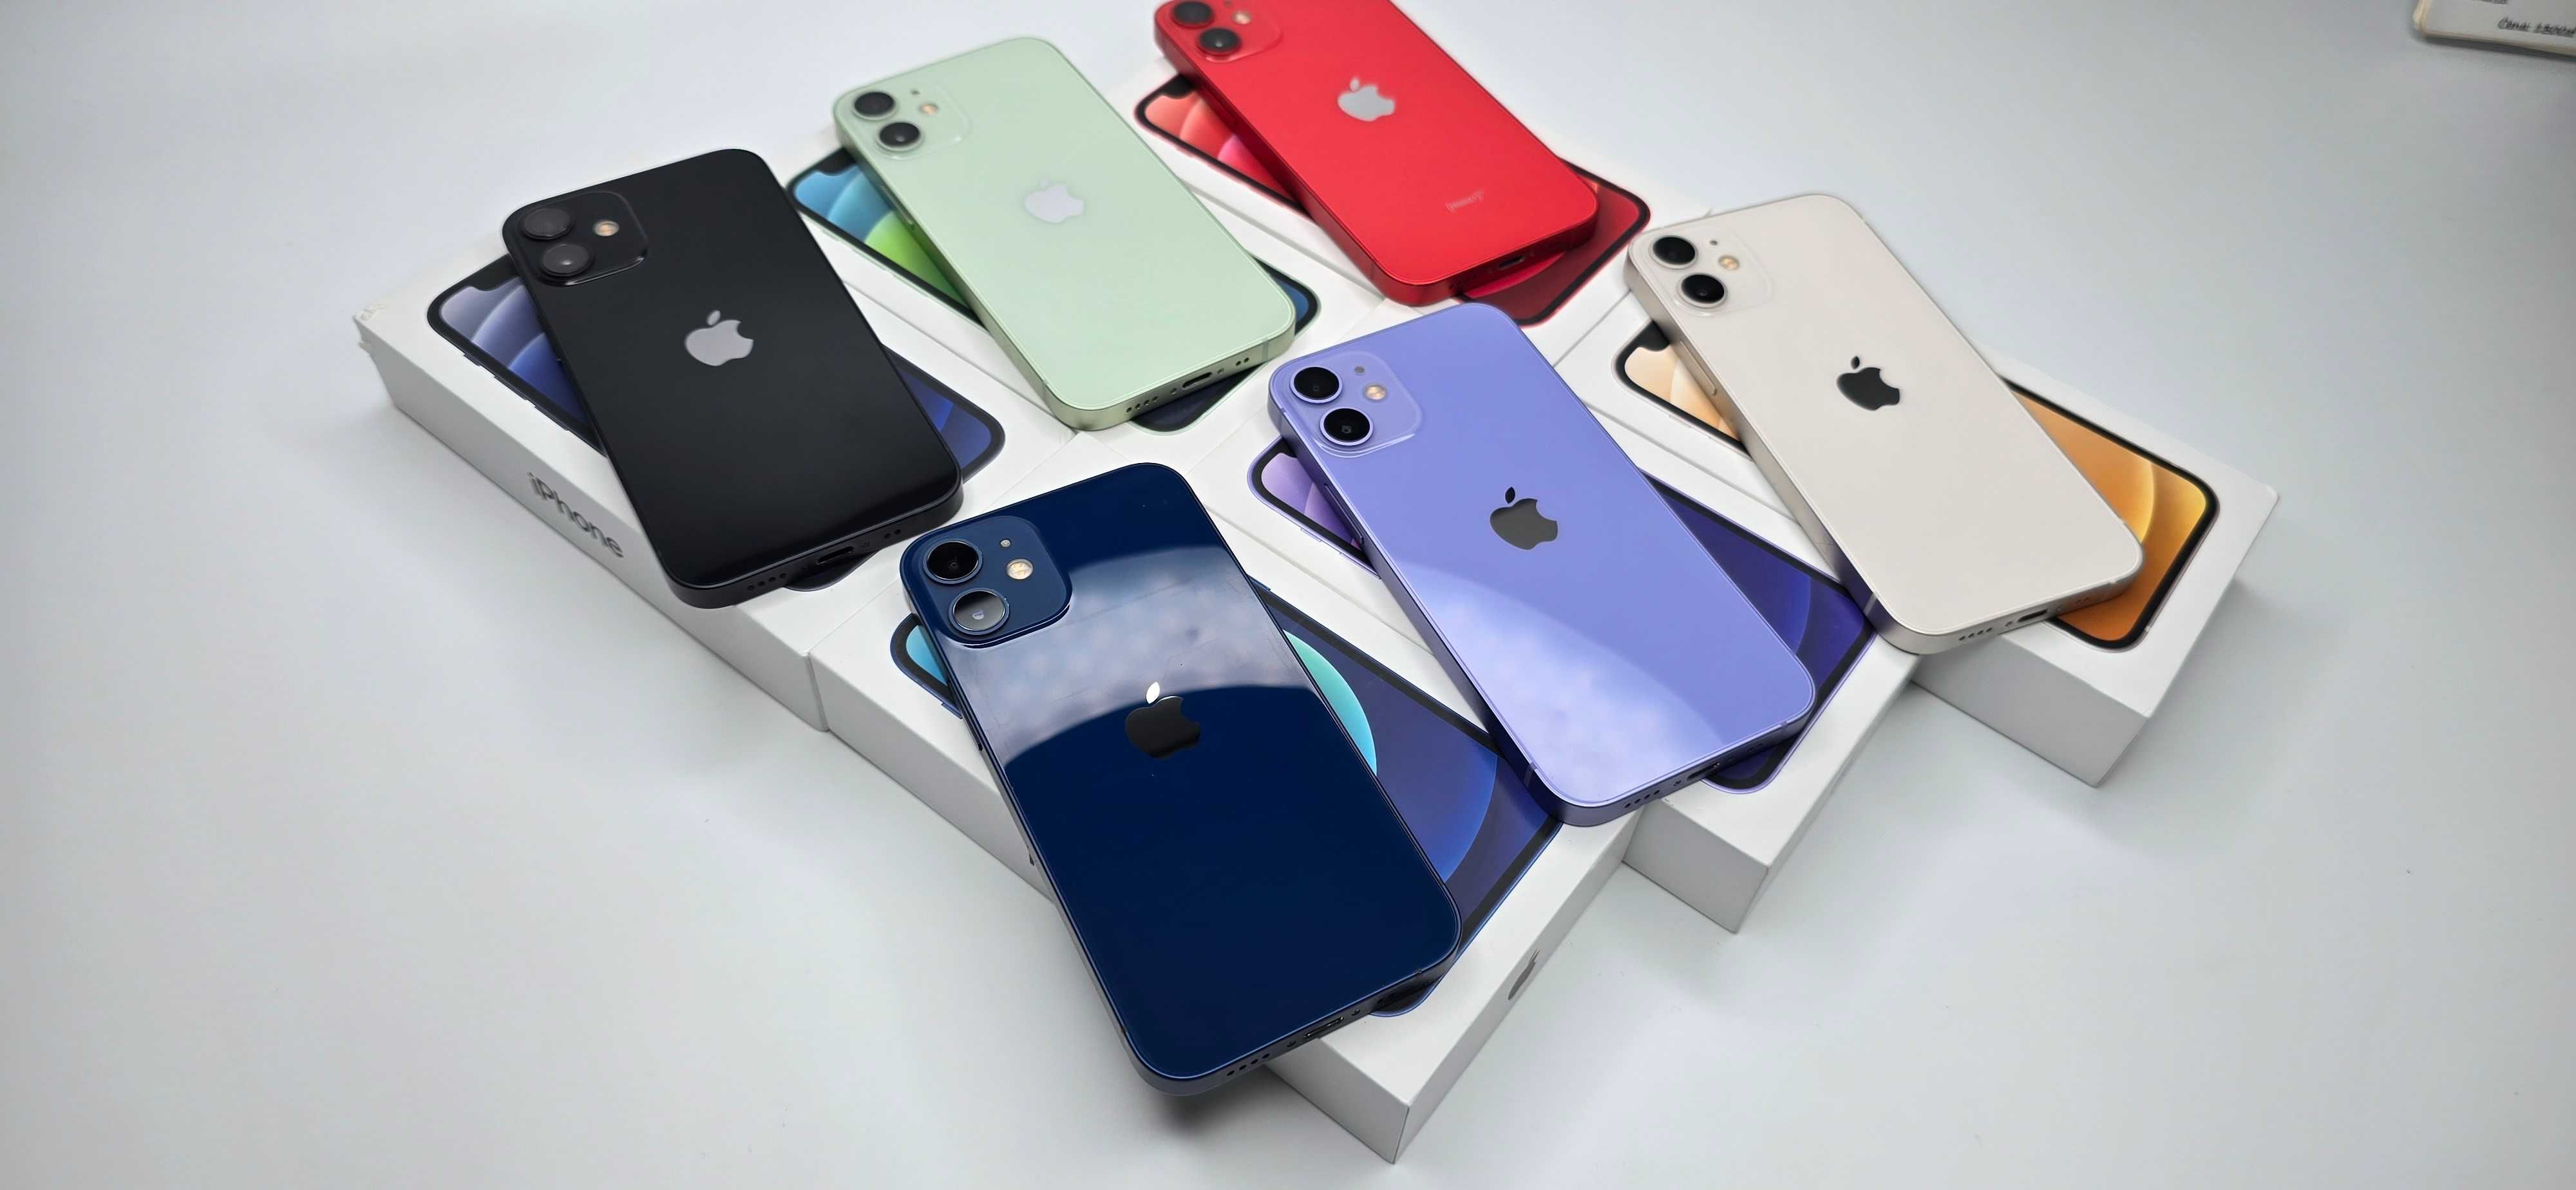 iPhone 12 mini 256gb komplet, gwarancja, sklep, 6 kolorów